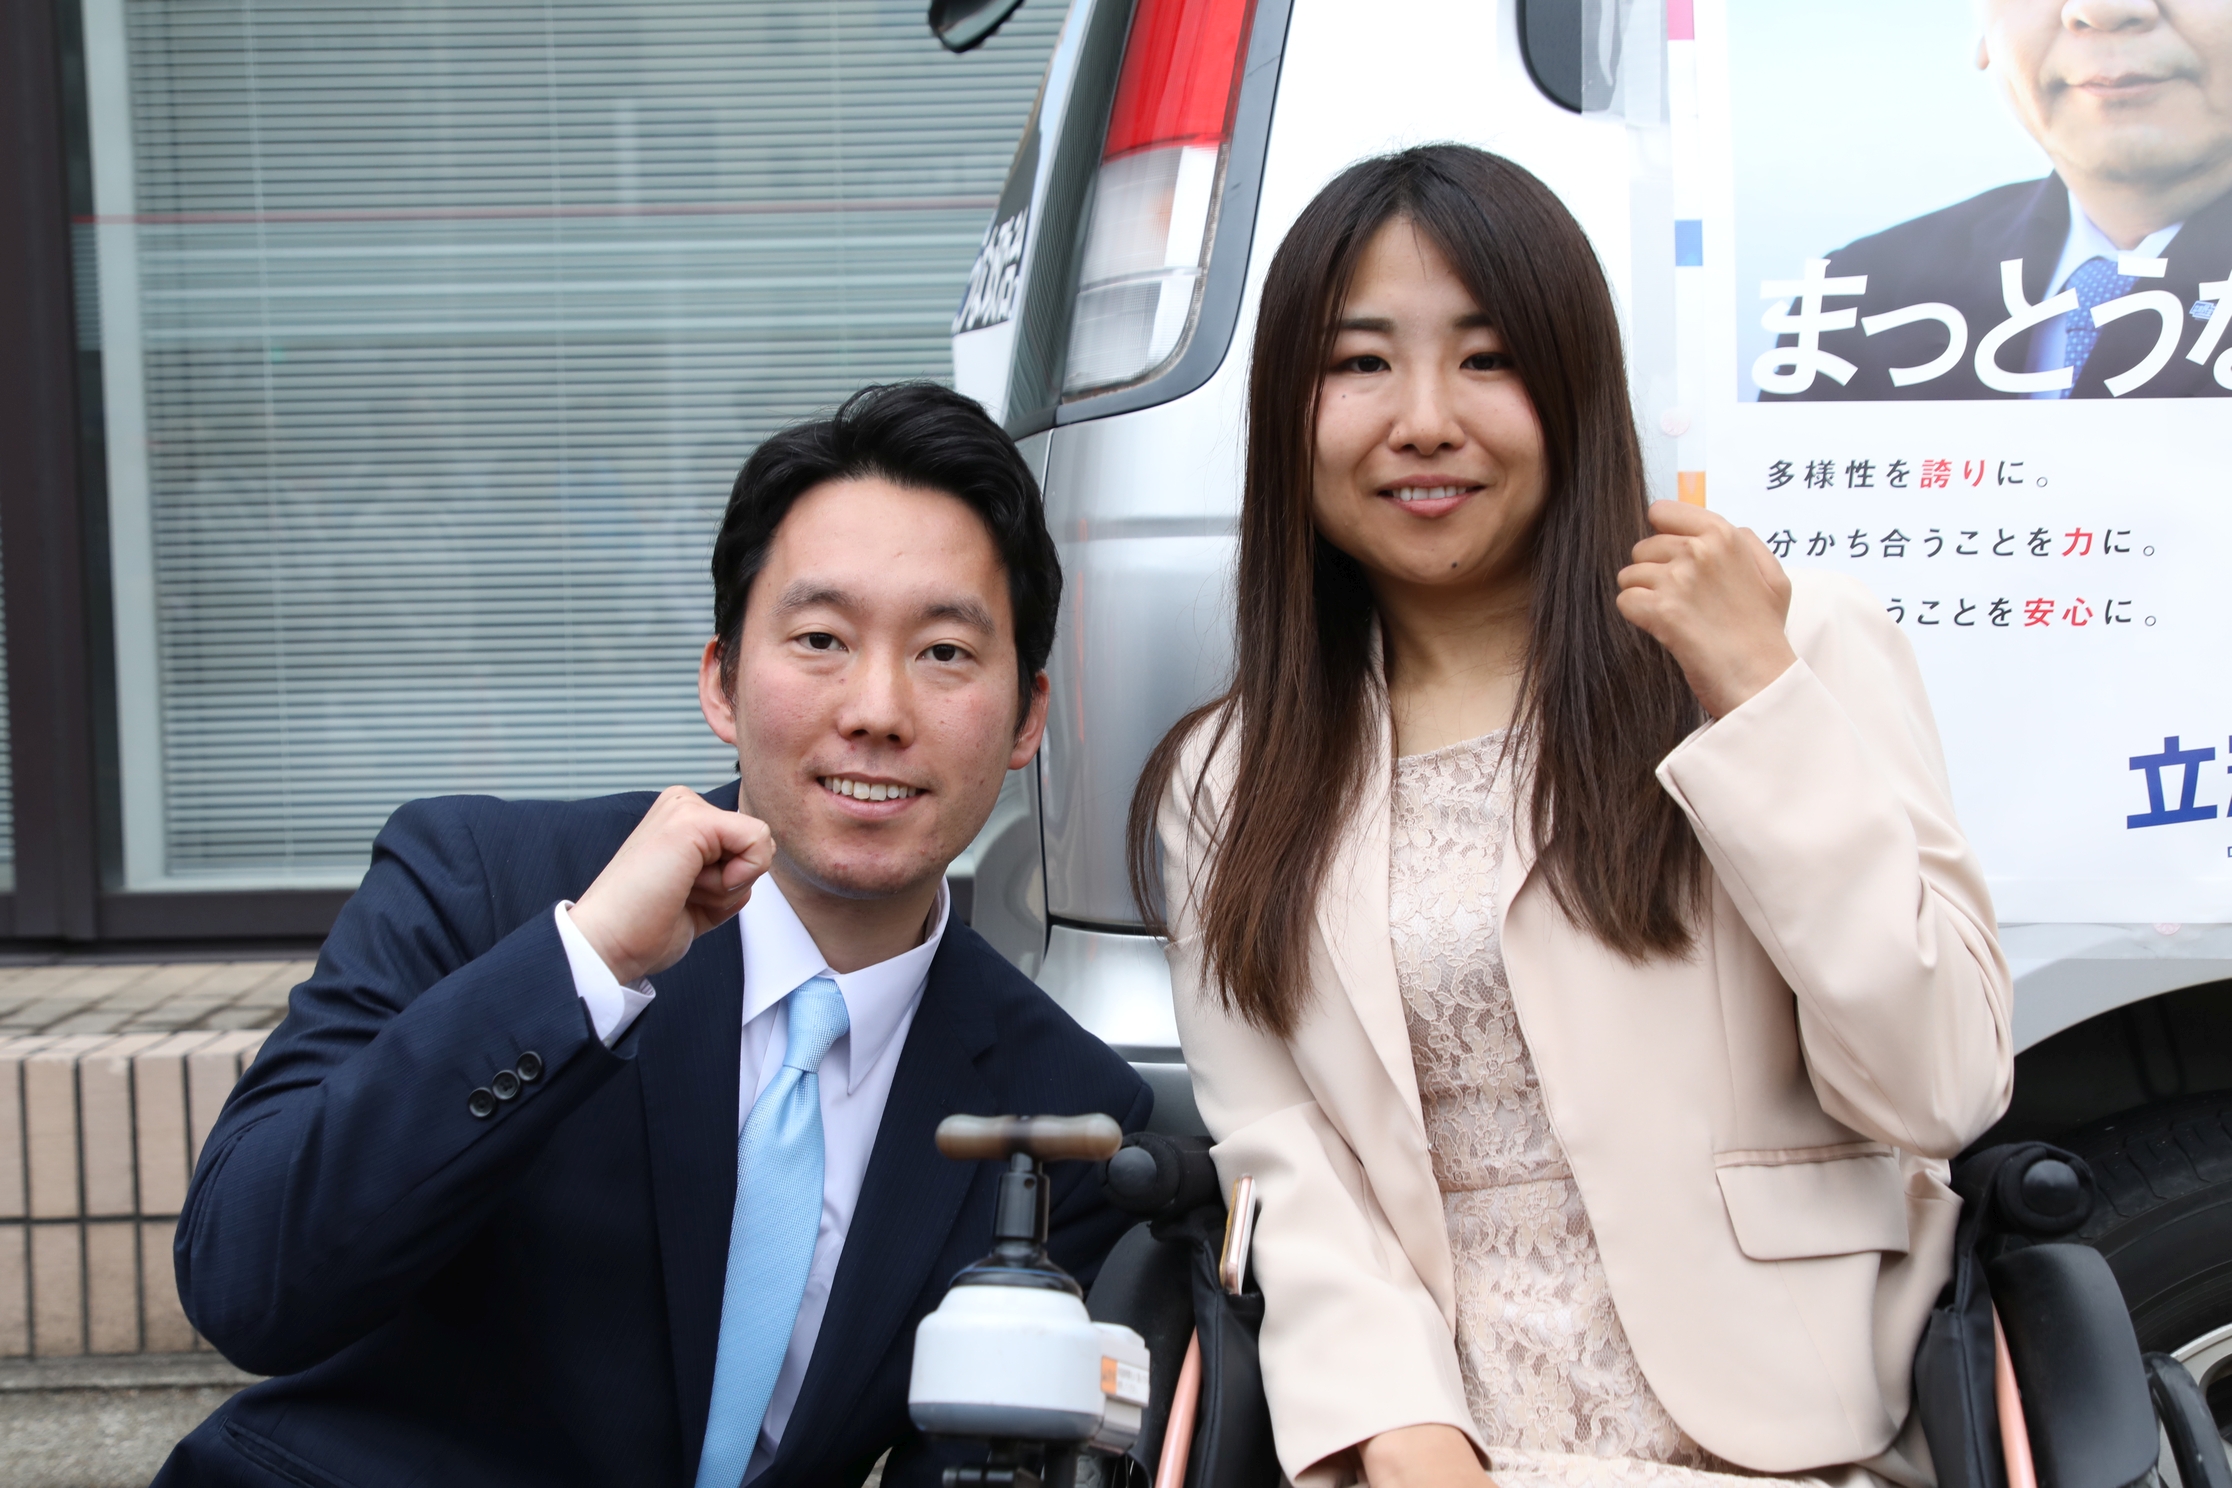 左から名古屋市議会議員選挙の公認候補予定者の奥村さん（昭和区担当）、小野澤さん（緑区担当）